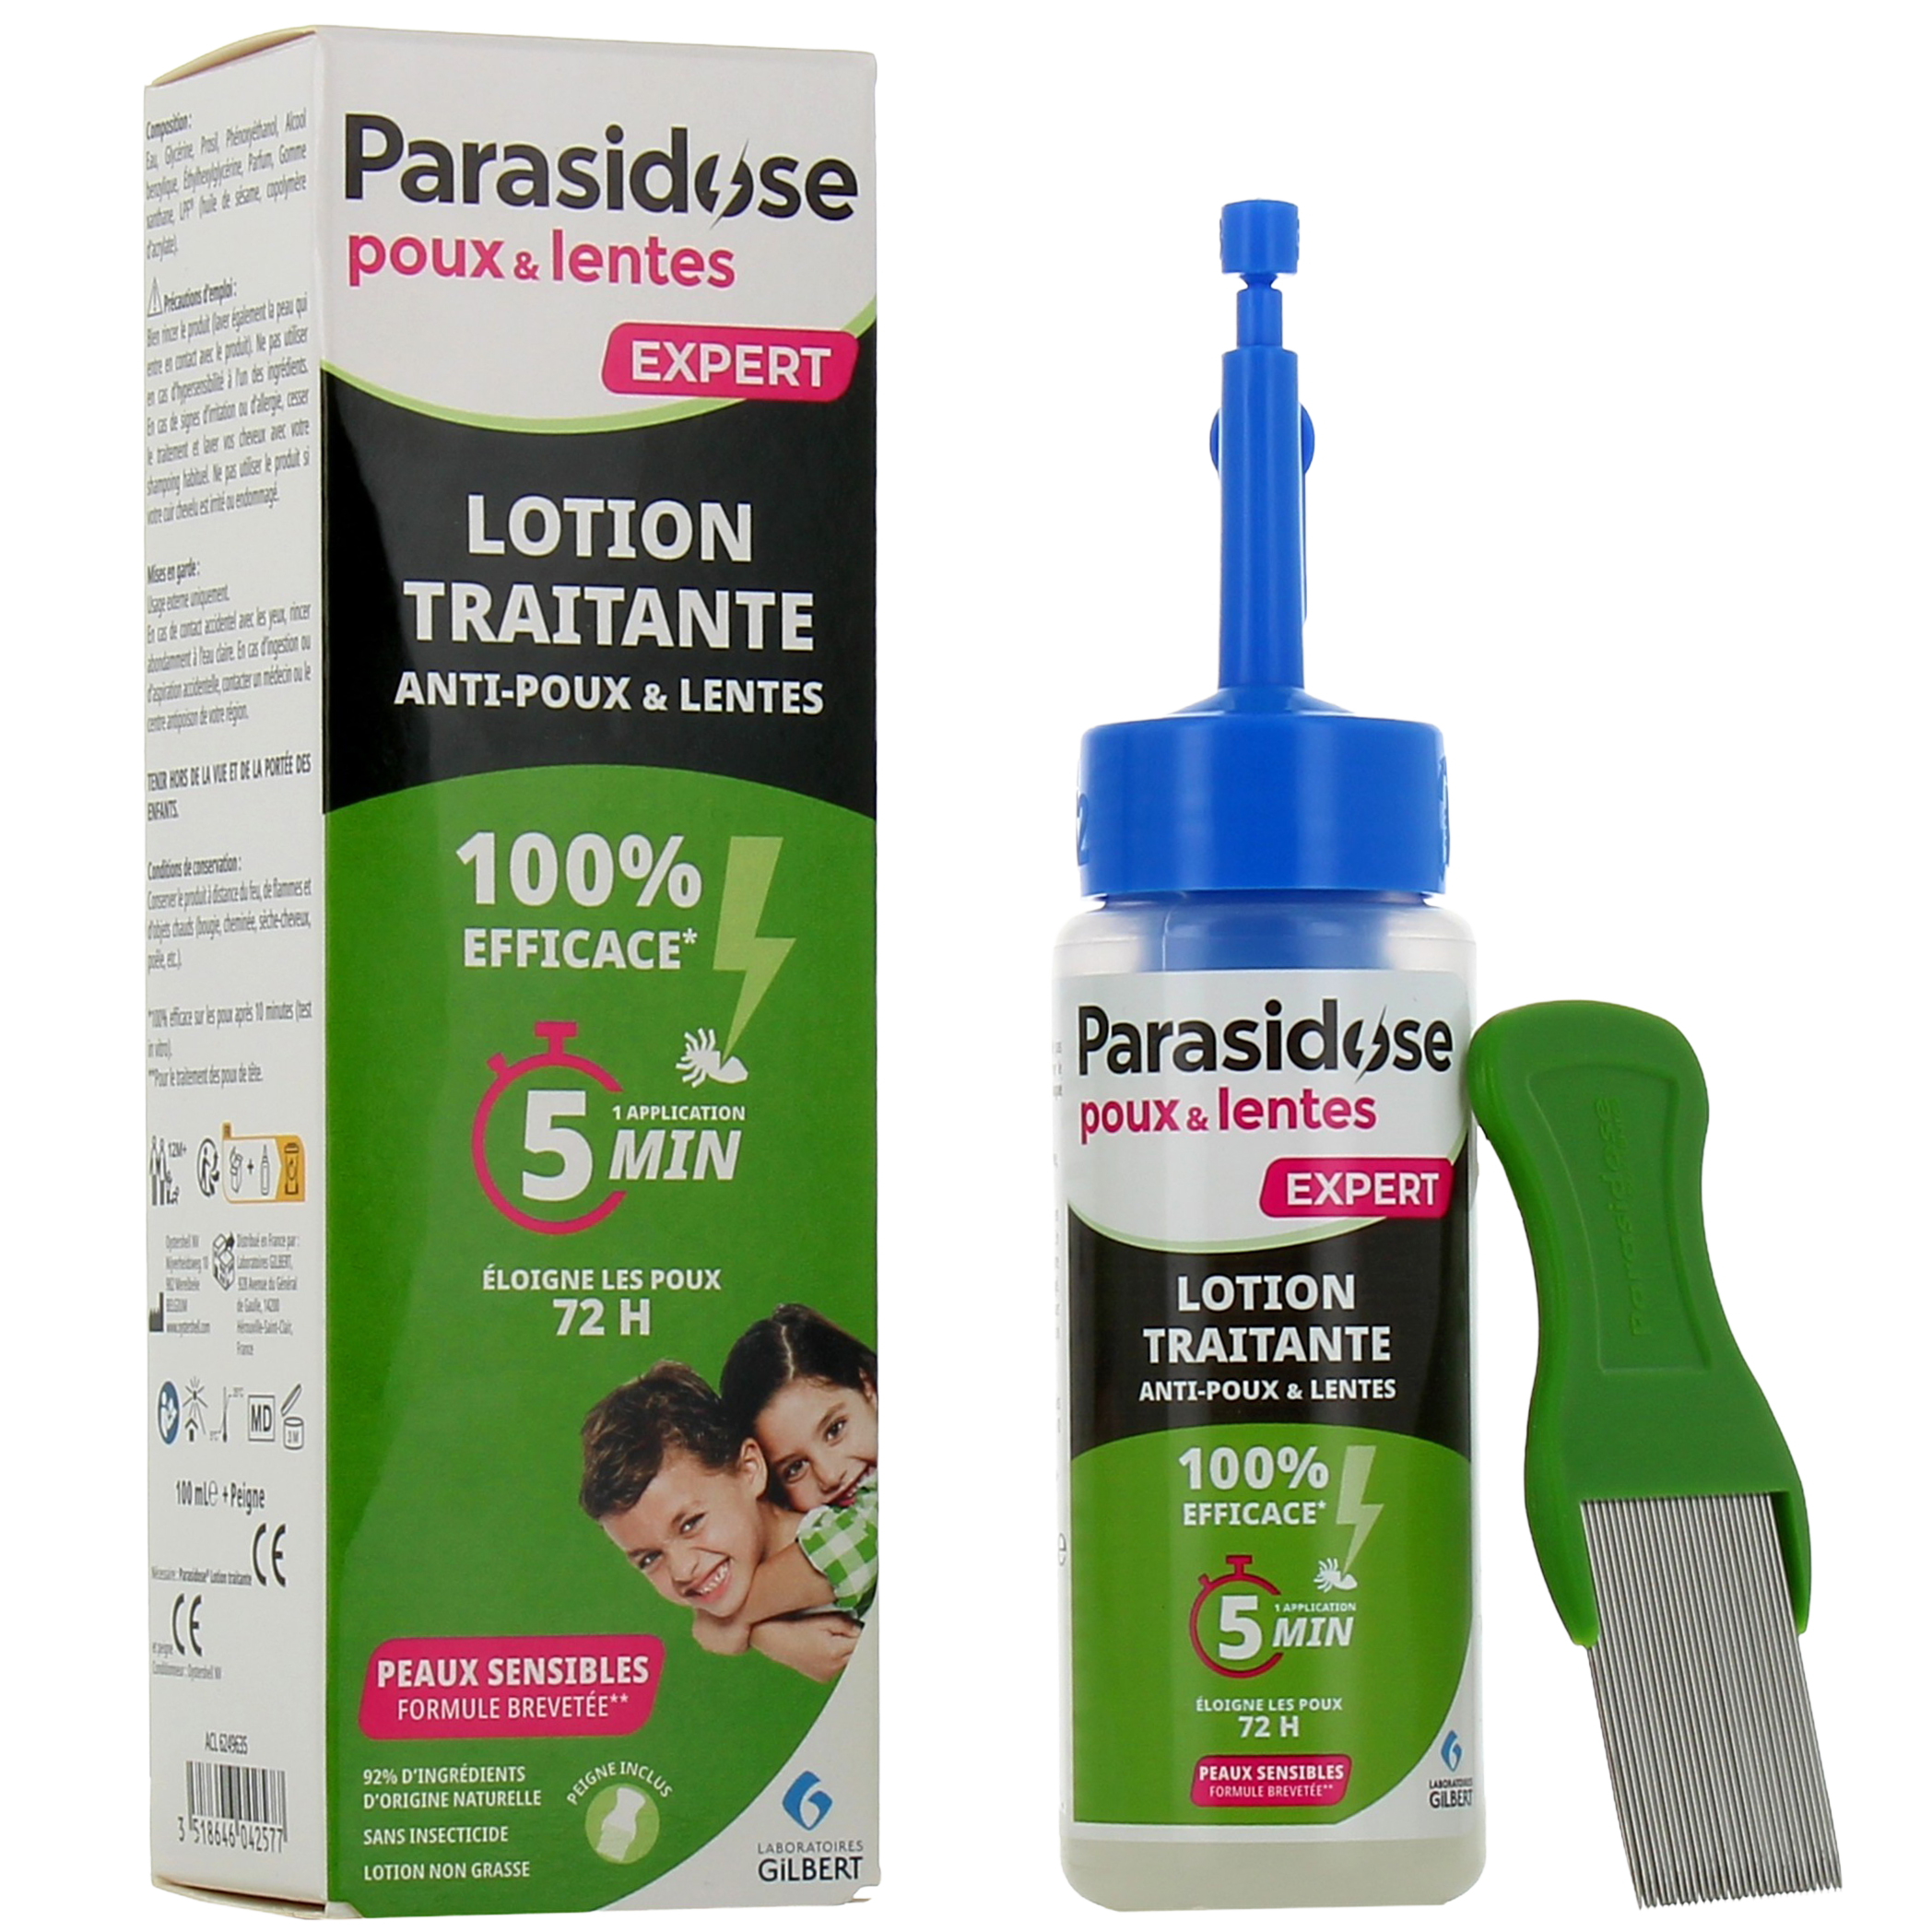 Le shampoing préventif anti-poux Parasidose a été spécifiquement